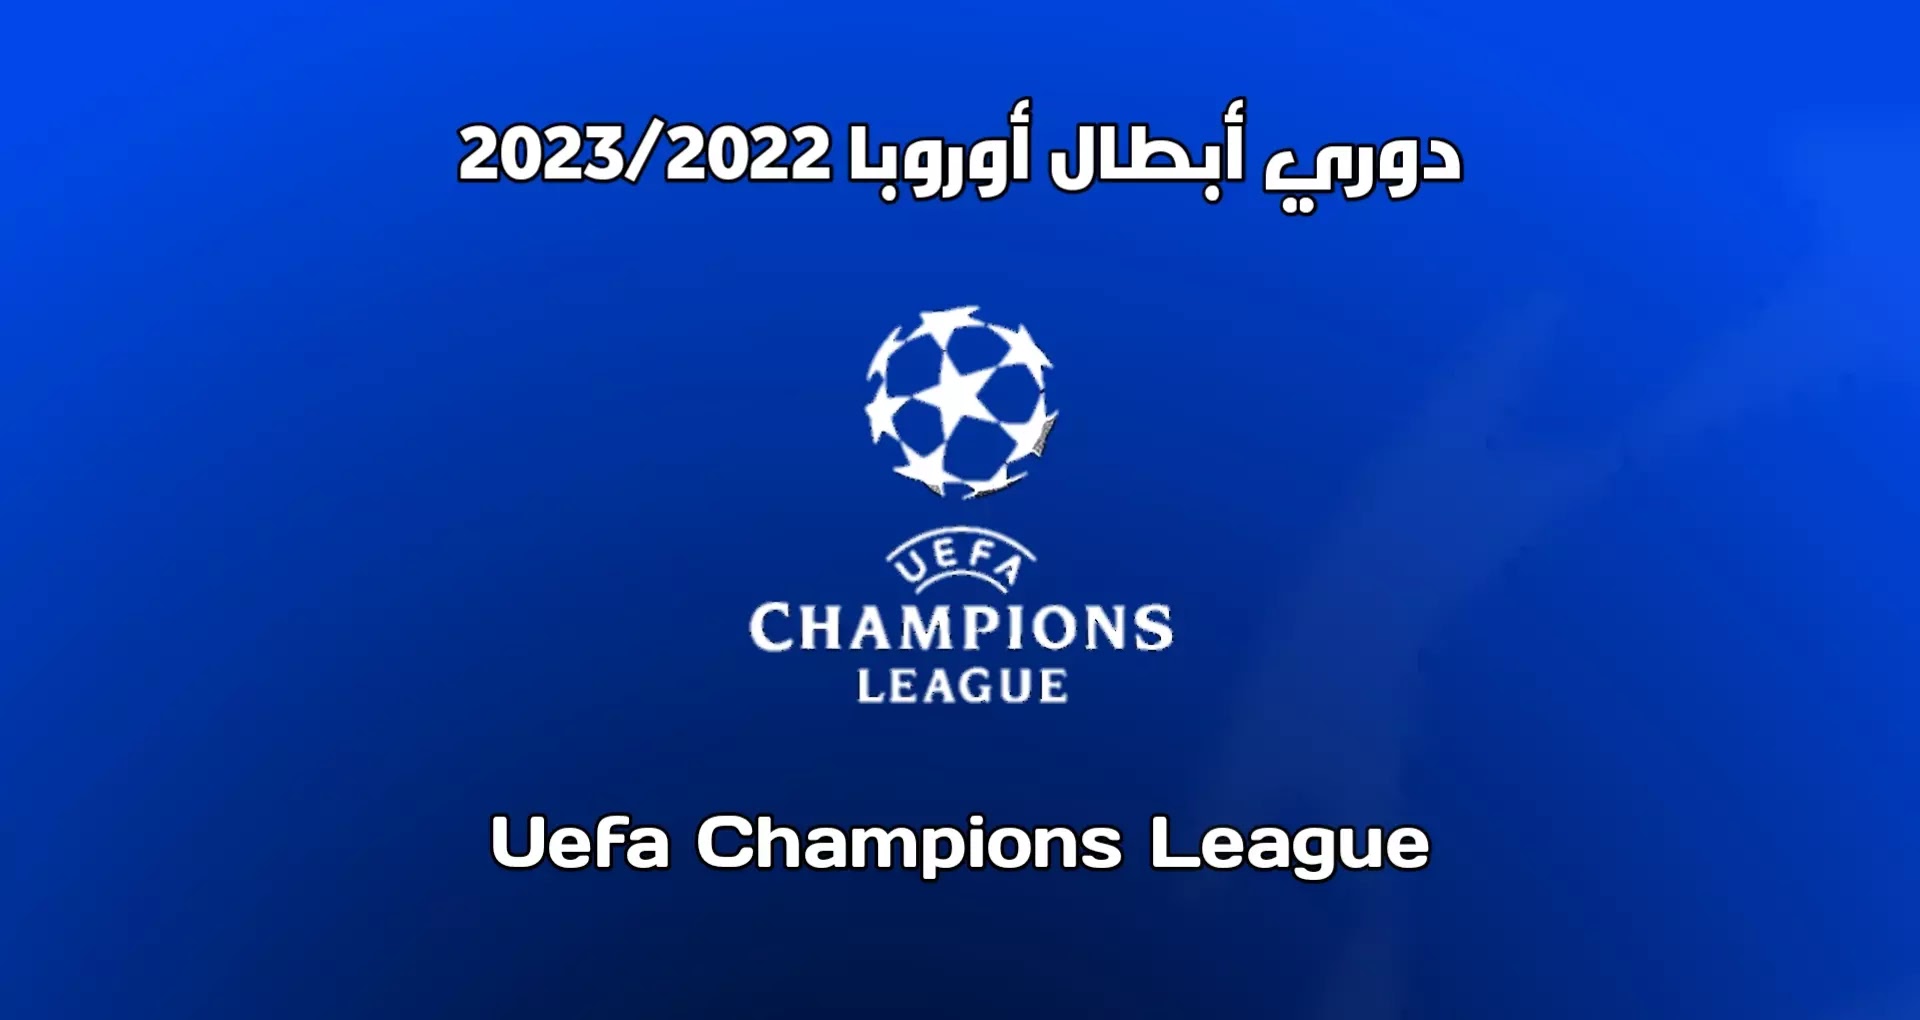 الفرق المتأهلة لدور ال16 من دوري أبطال أوروبا 2022/2023